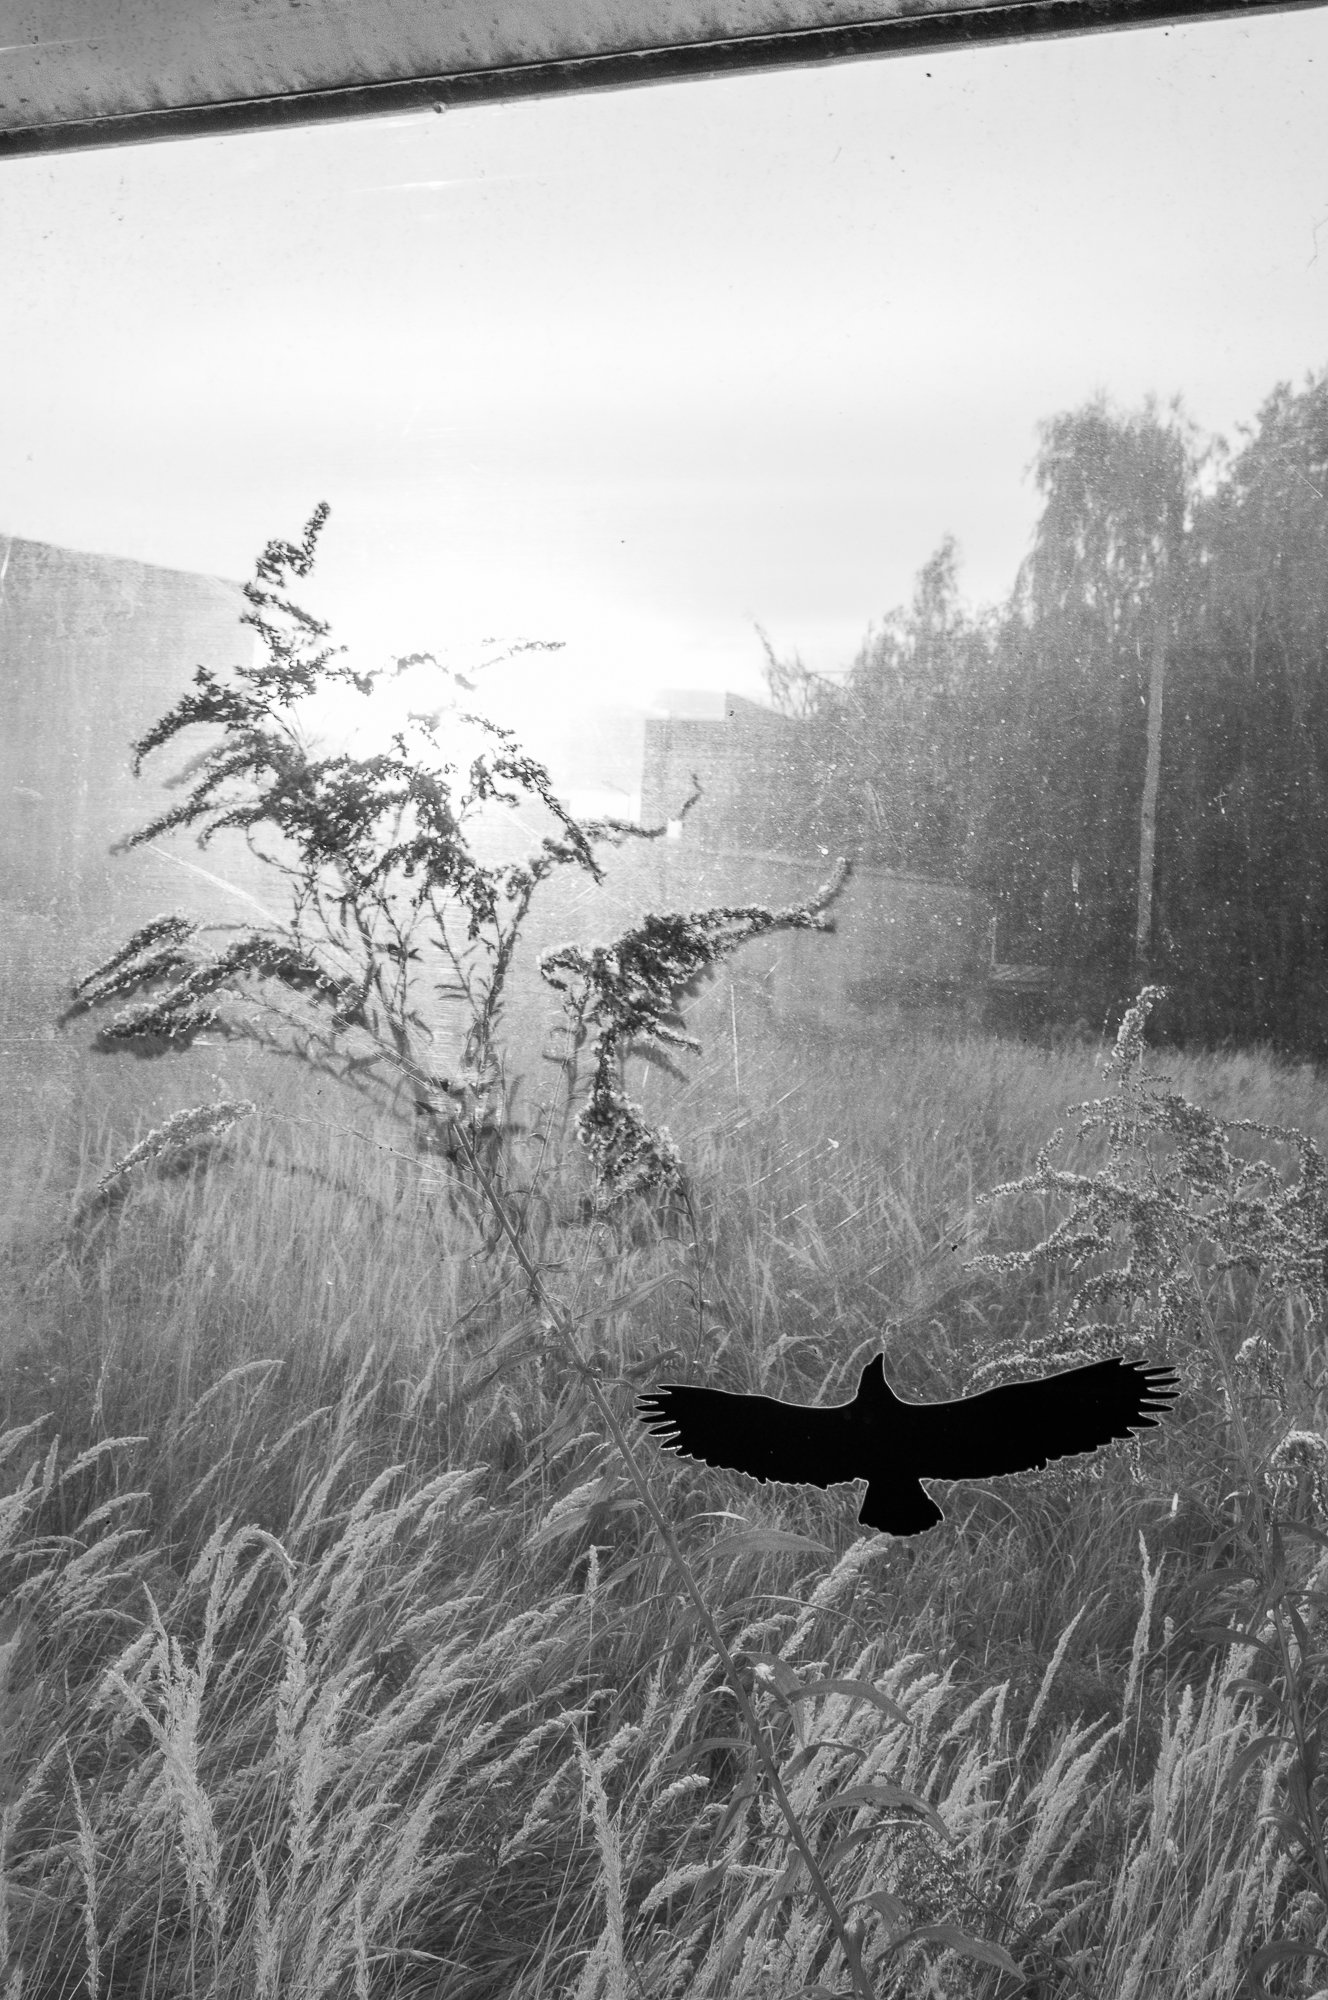 Adam Mazek Photography Warsaw 2020. Post: "Fatigue." Minimalism, part 38. Bird.